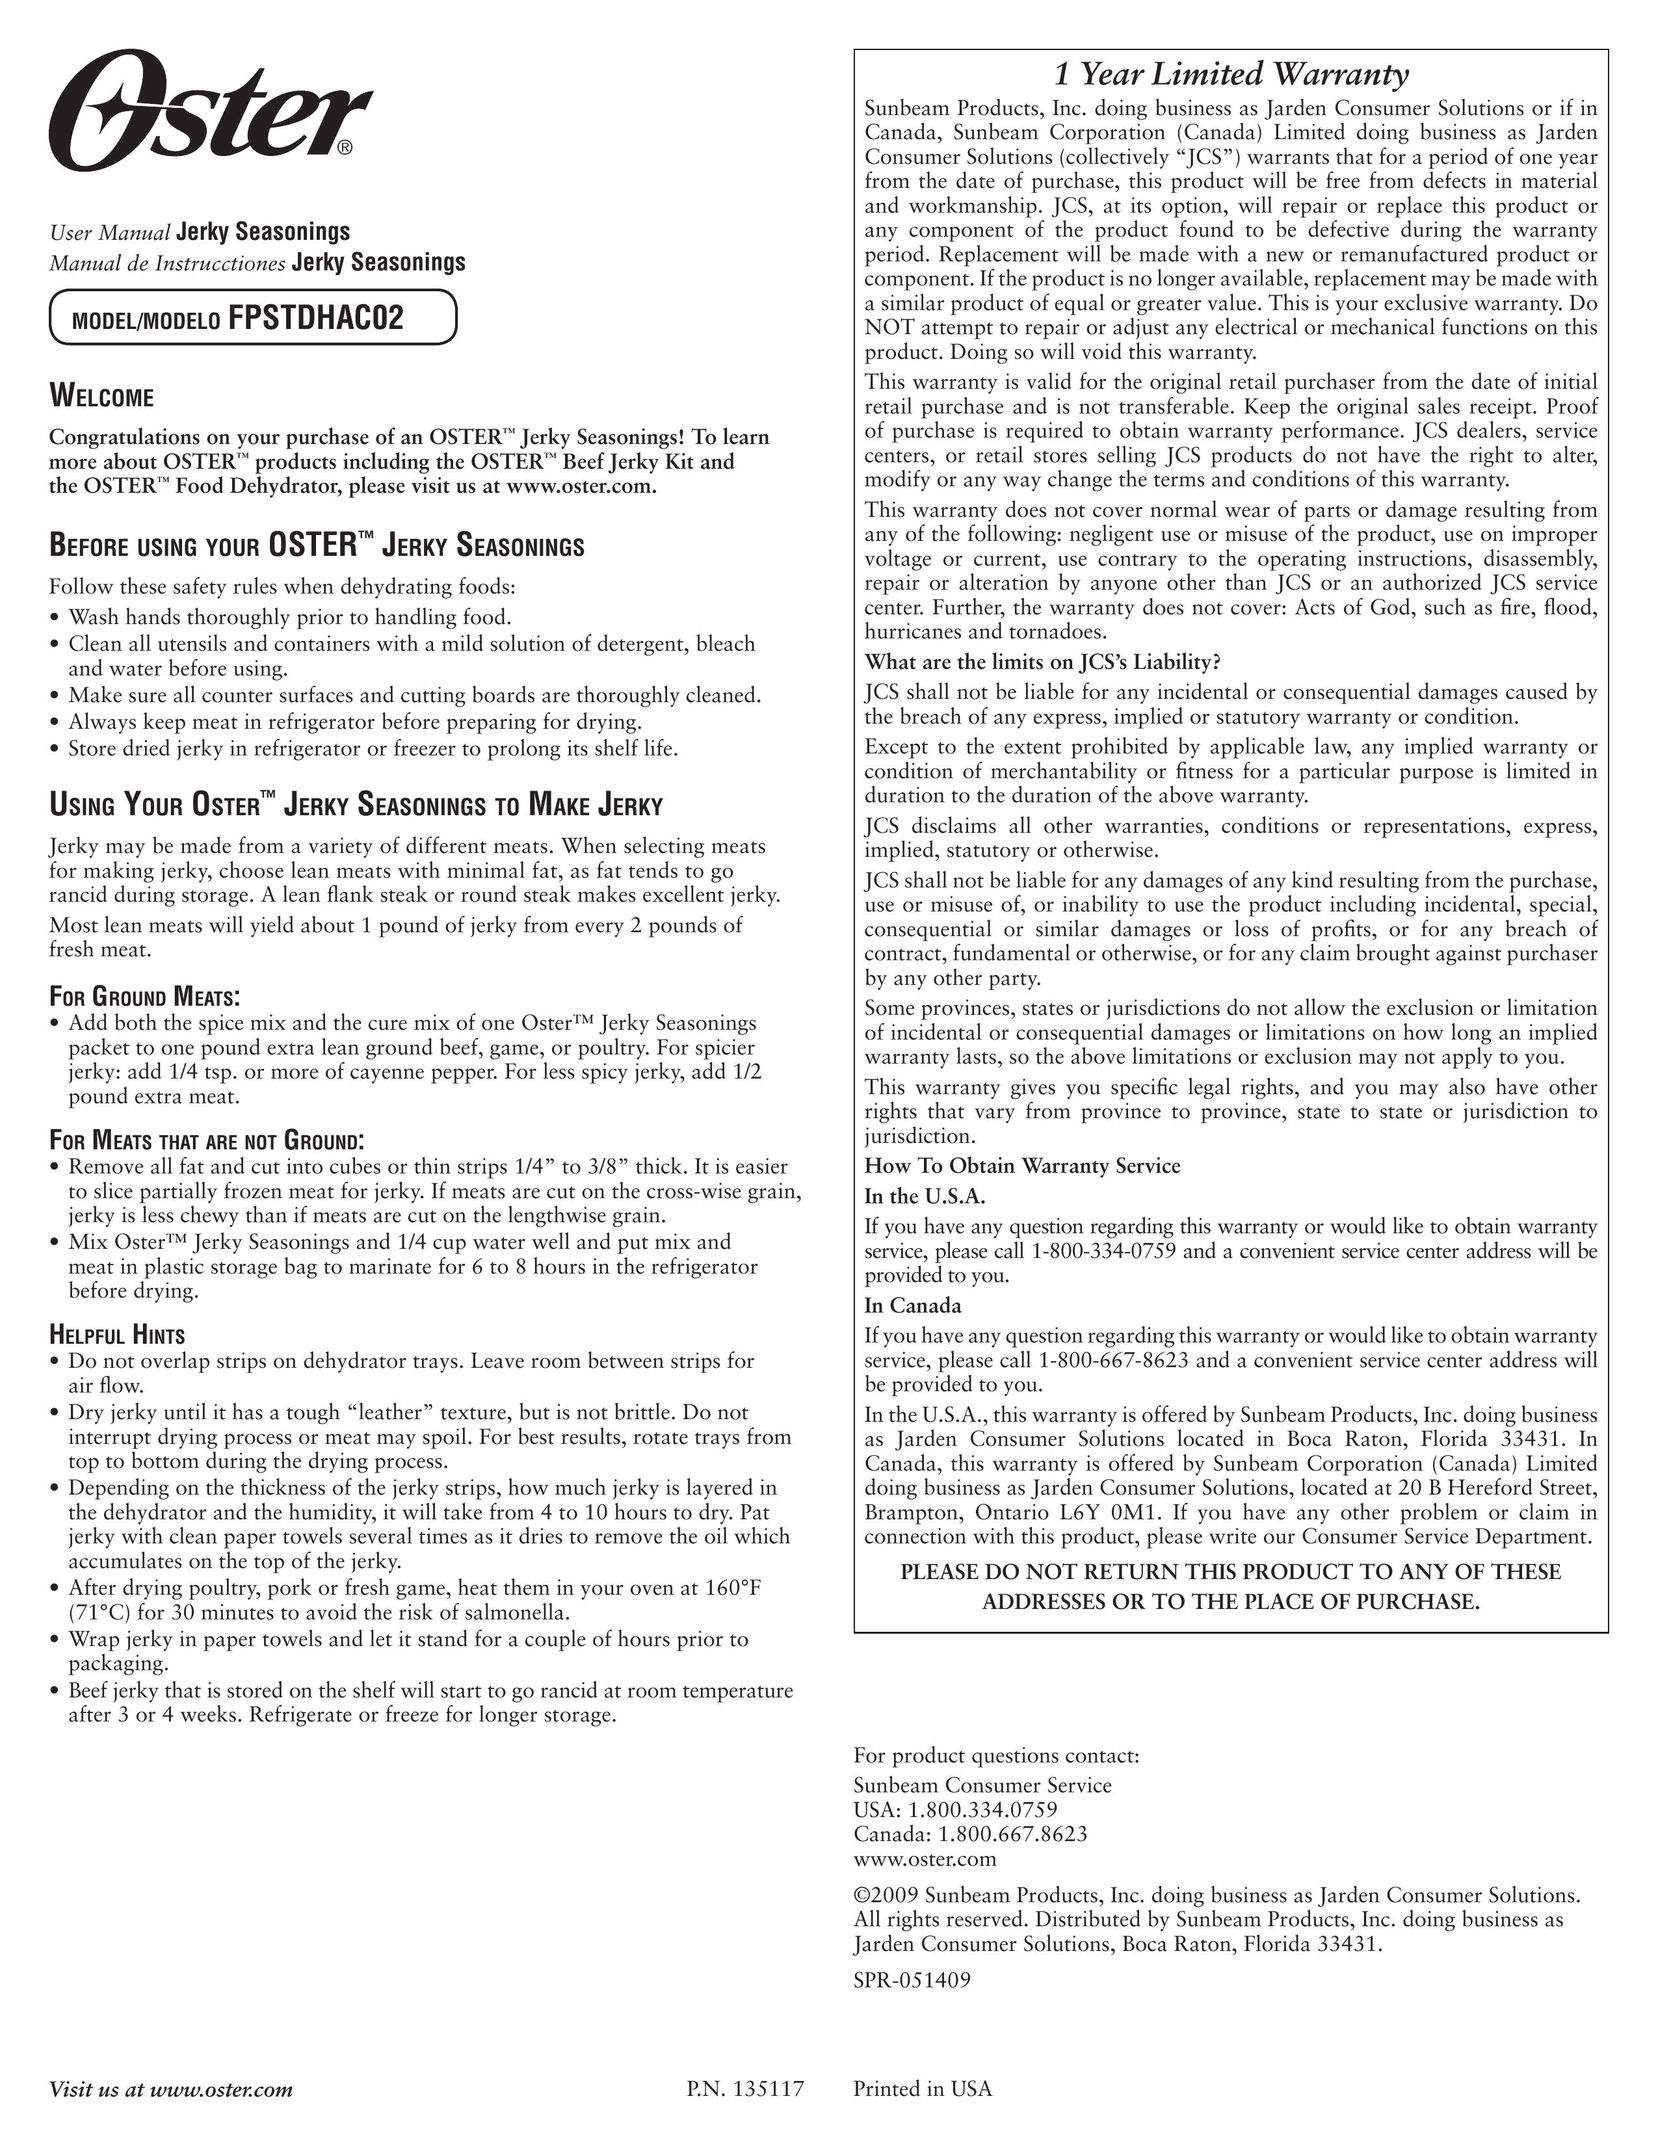 Oster FPSTDHAC02 Food Saver User Manual